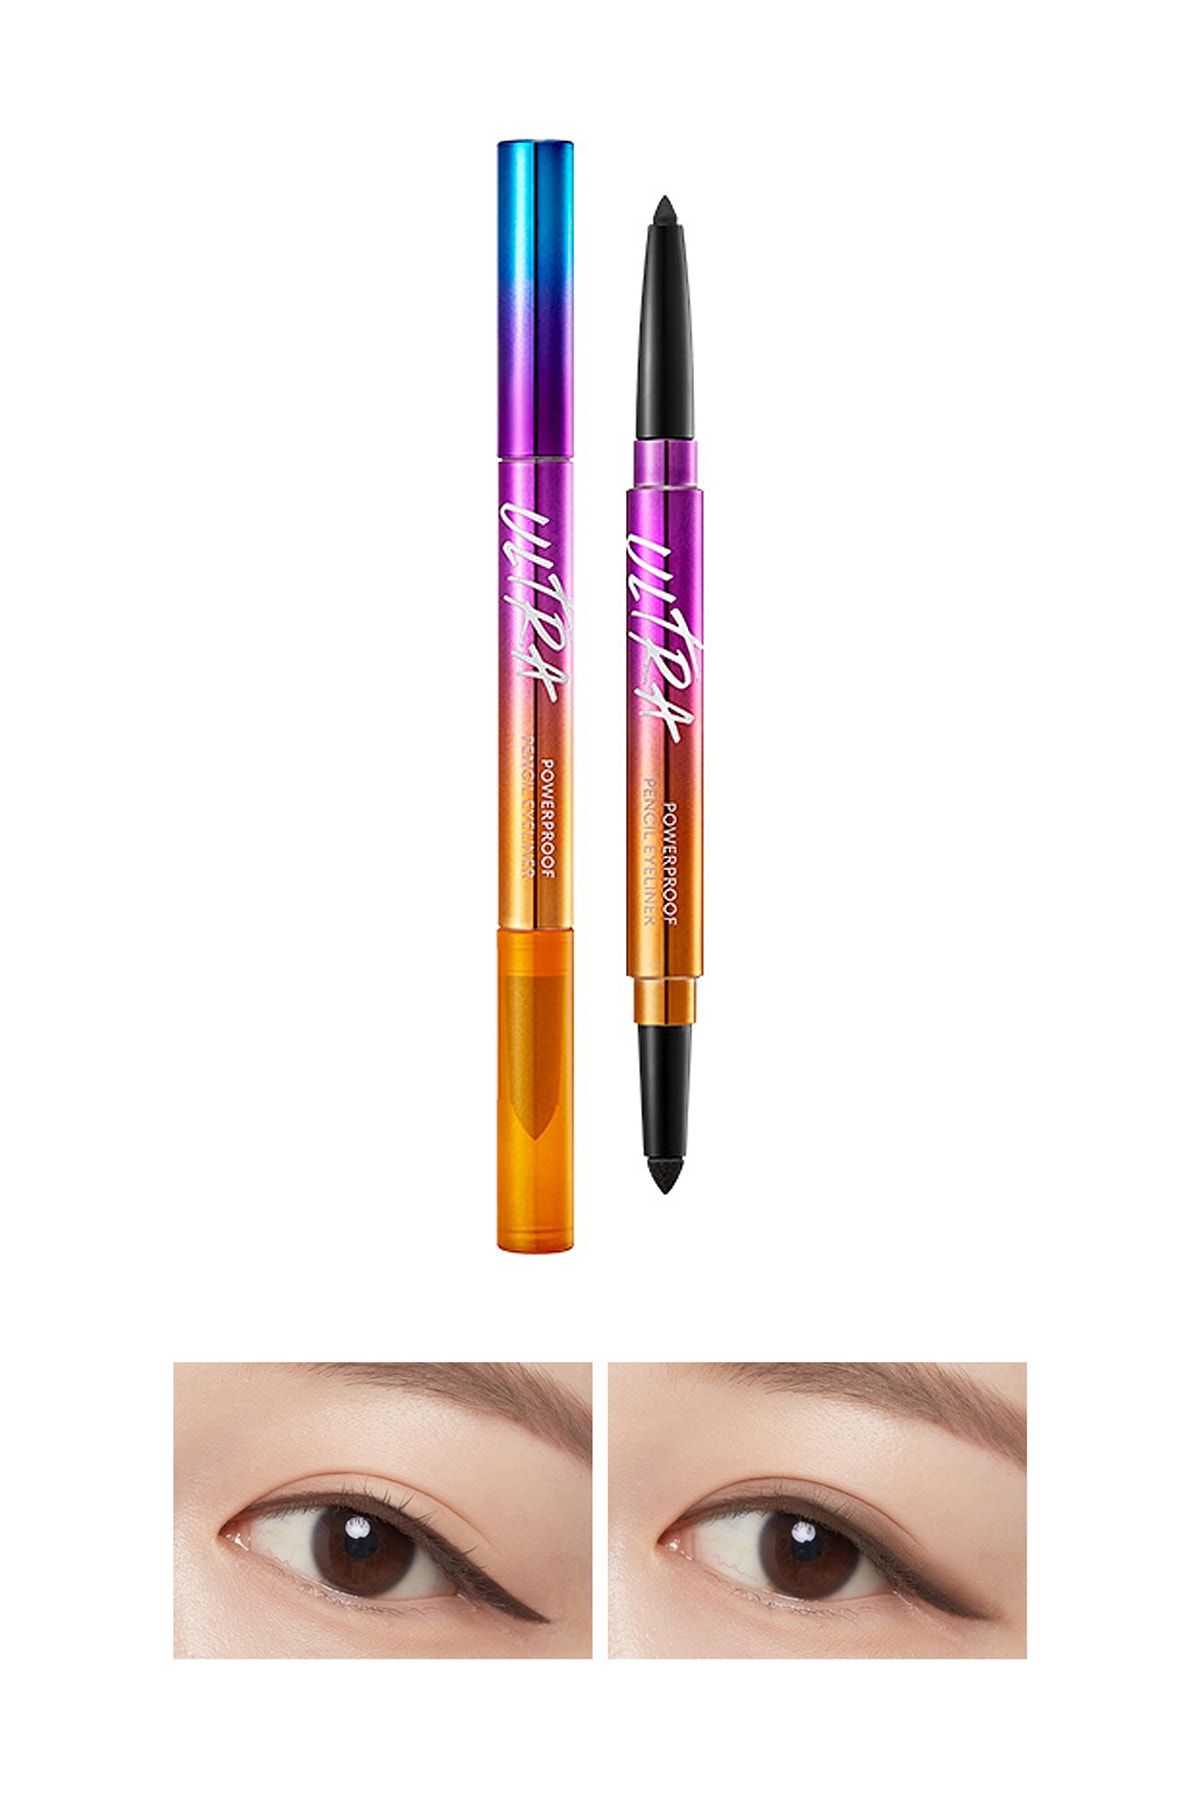 Missha Suya Dayanıklı Kalıcı Jel Göz Kalemi Ultra Powerproof Pencil Eyeliner Ash Brown